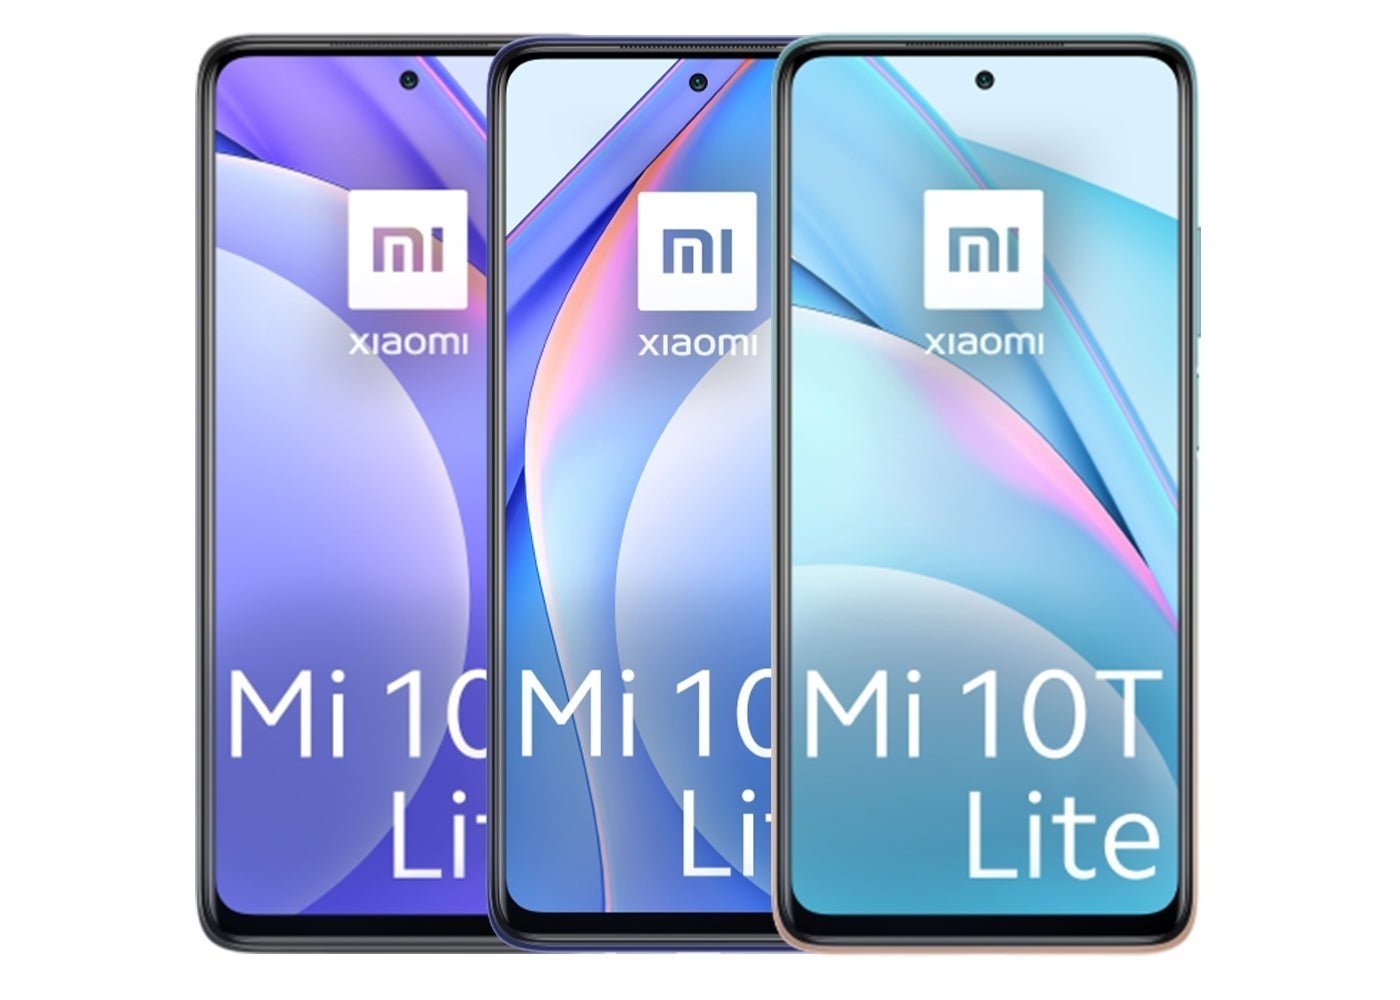 Los tres colores del Xiaomi MI 10T Lite